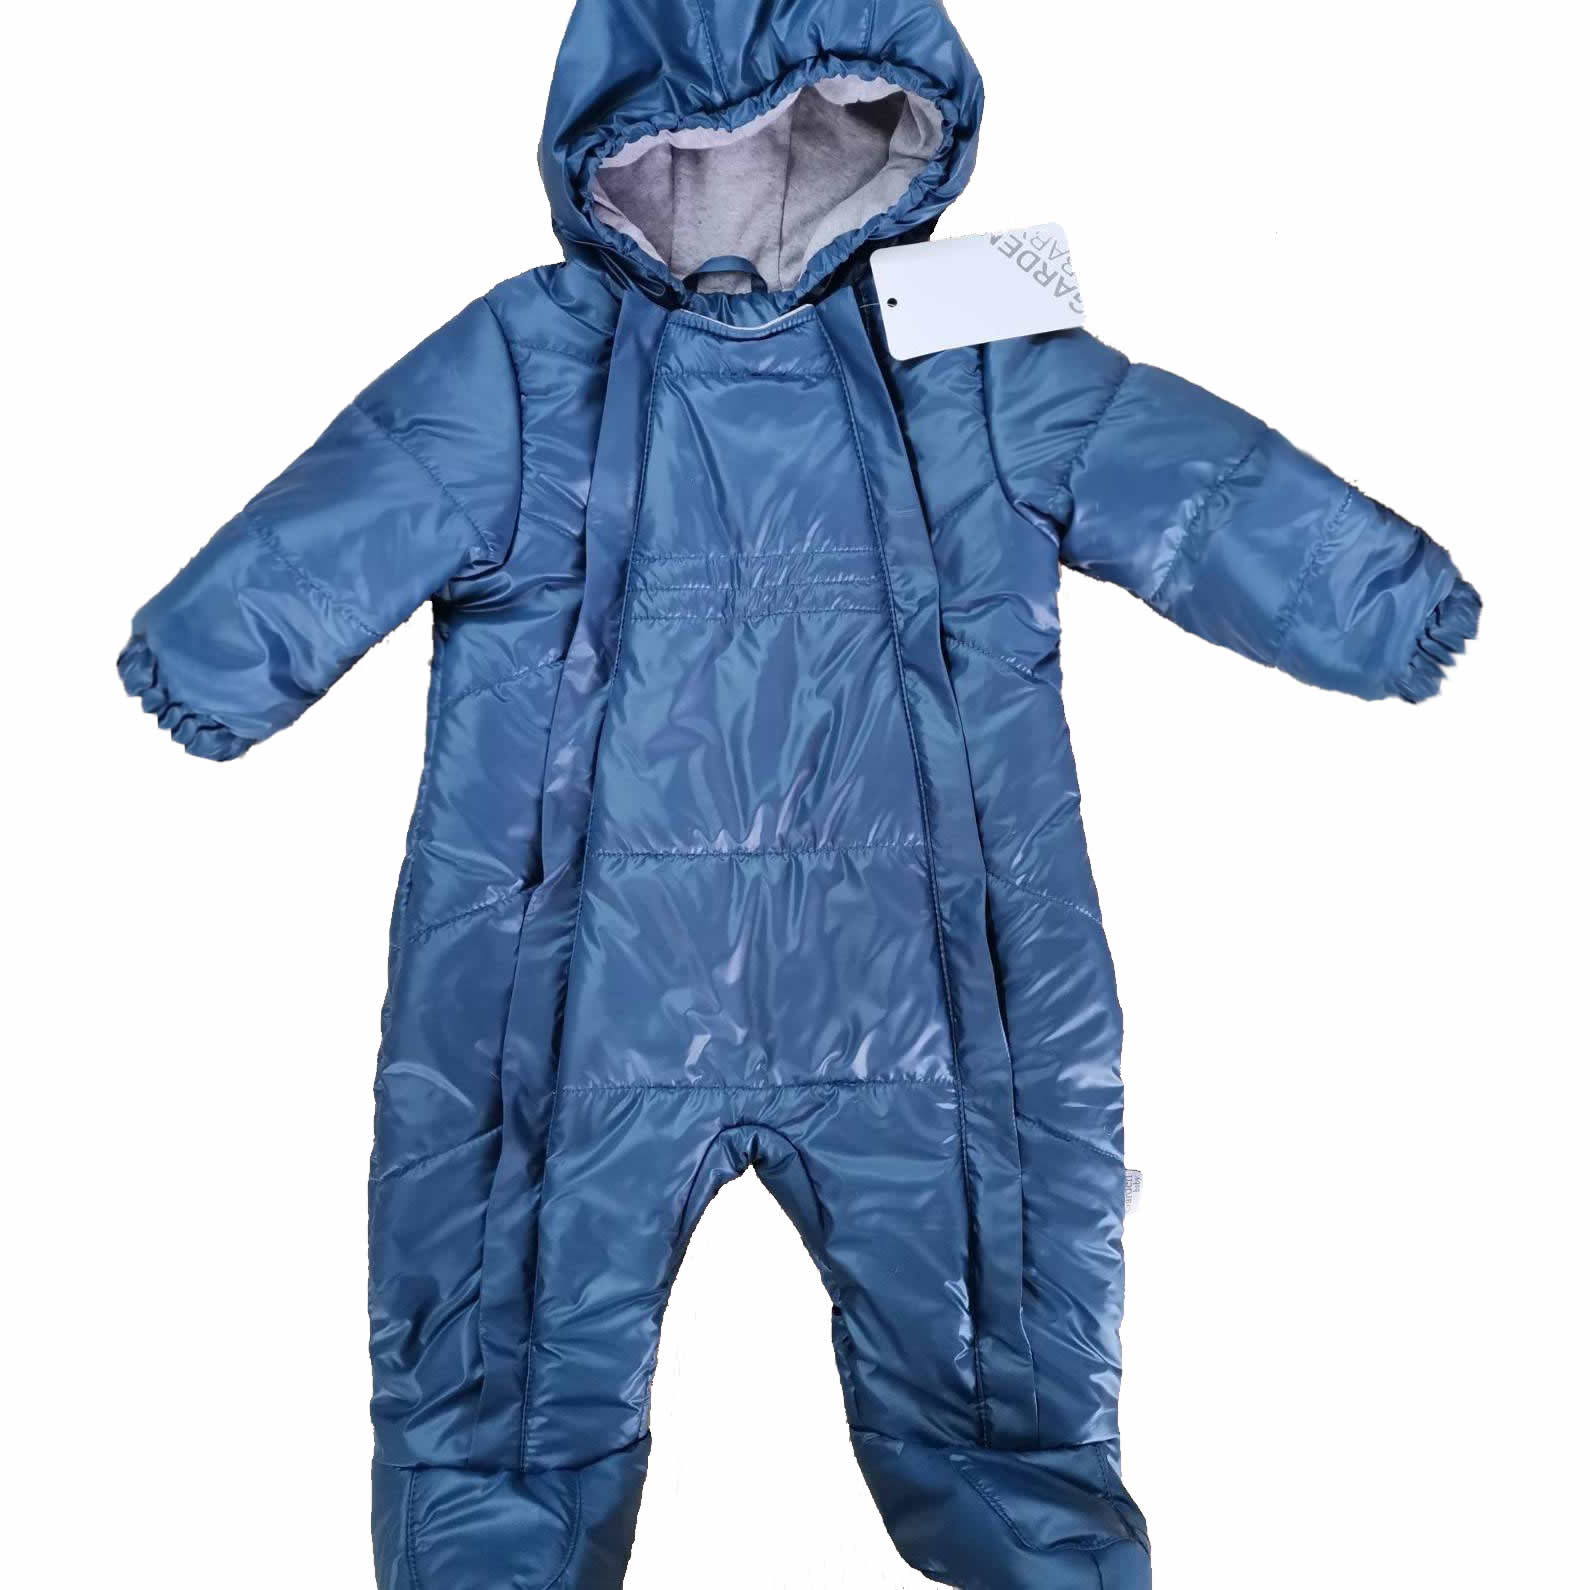 Детский демисезонный комбинезон для мальчика, серо-синий (101033-36/32), Garden Baby (Гарден Беби)